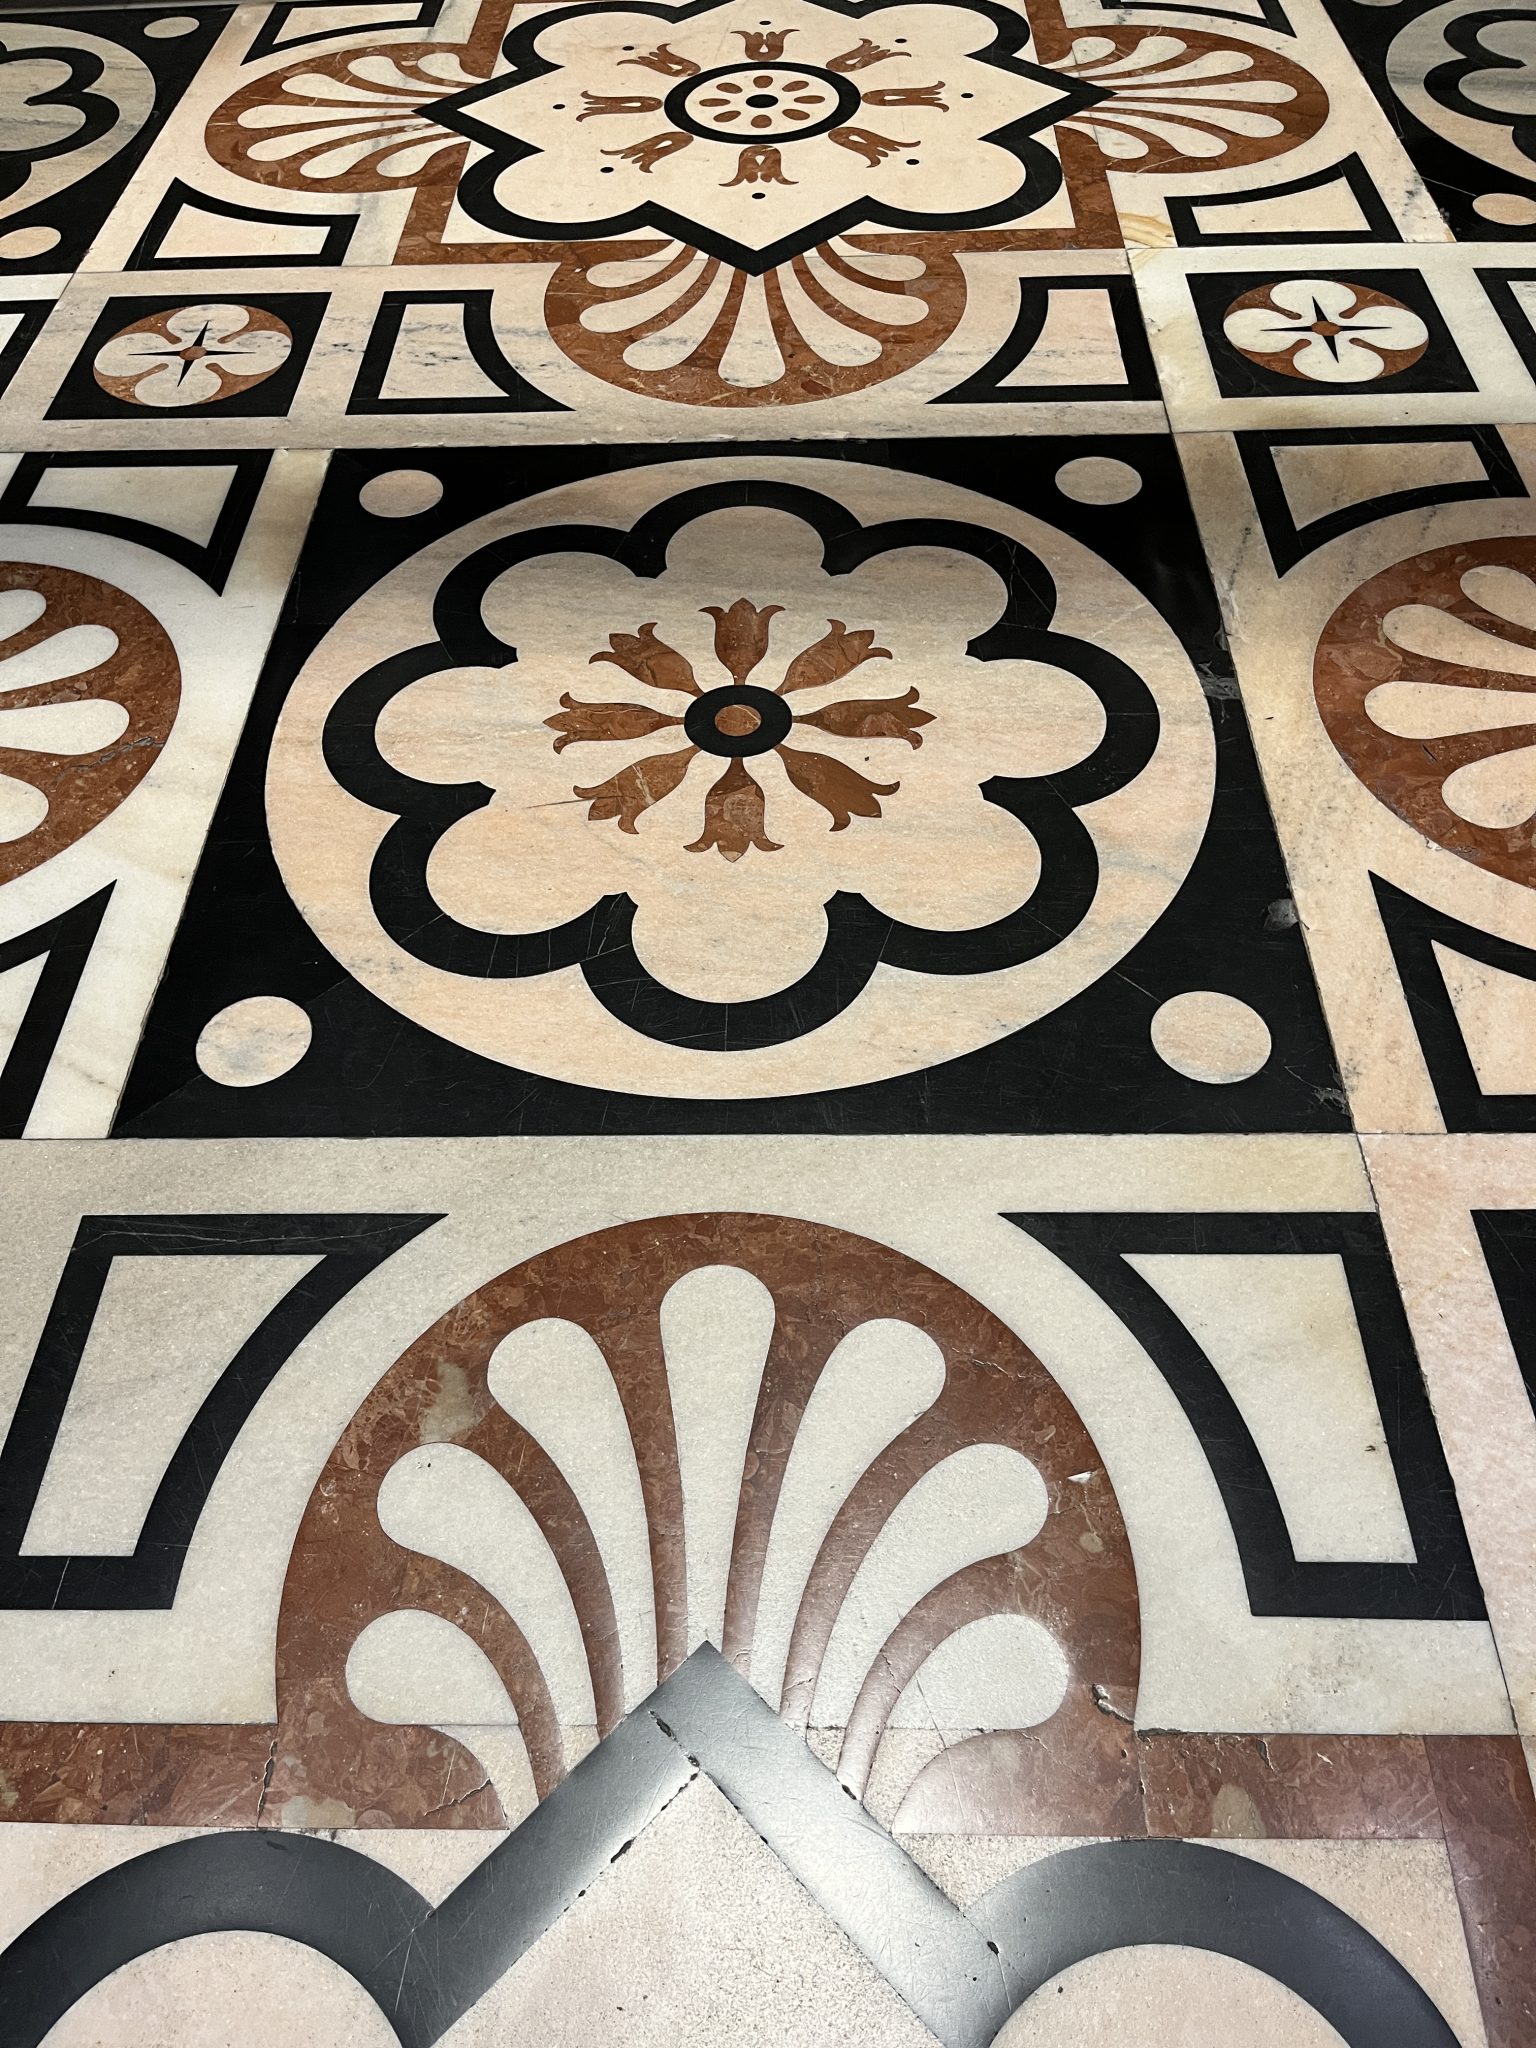 Tile floor, Duomo di Milano, Milan, Italy